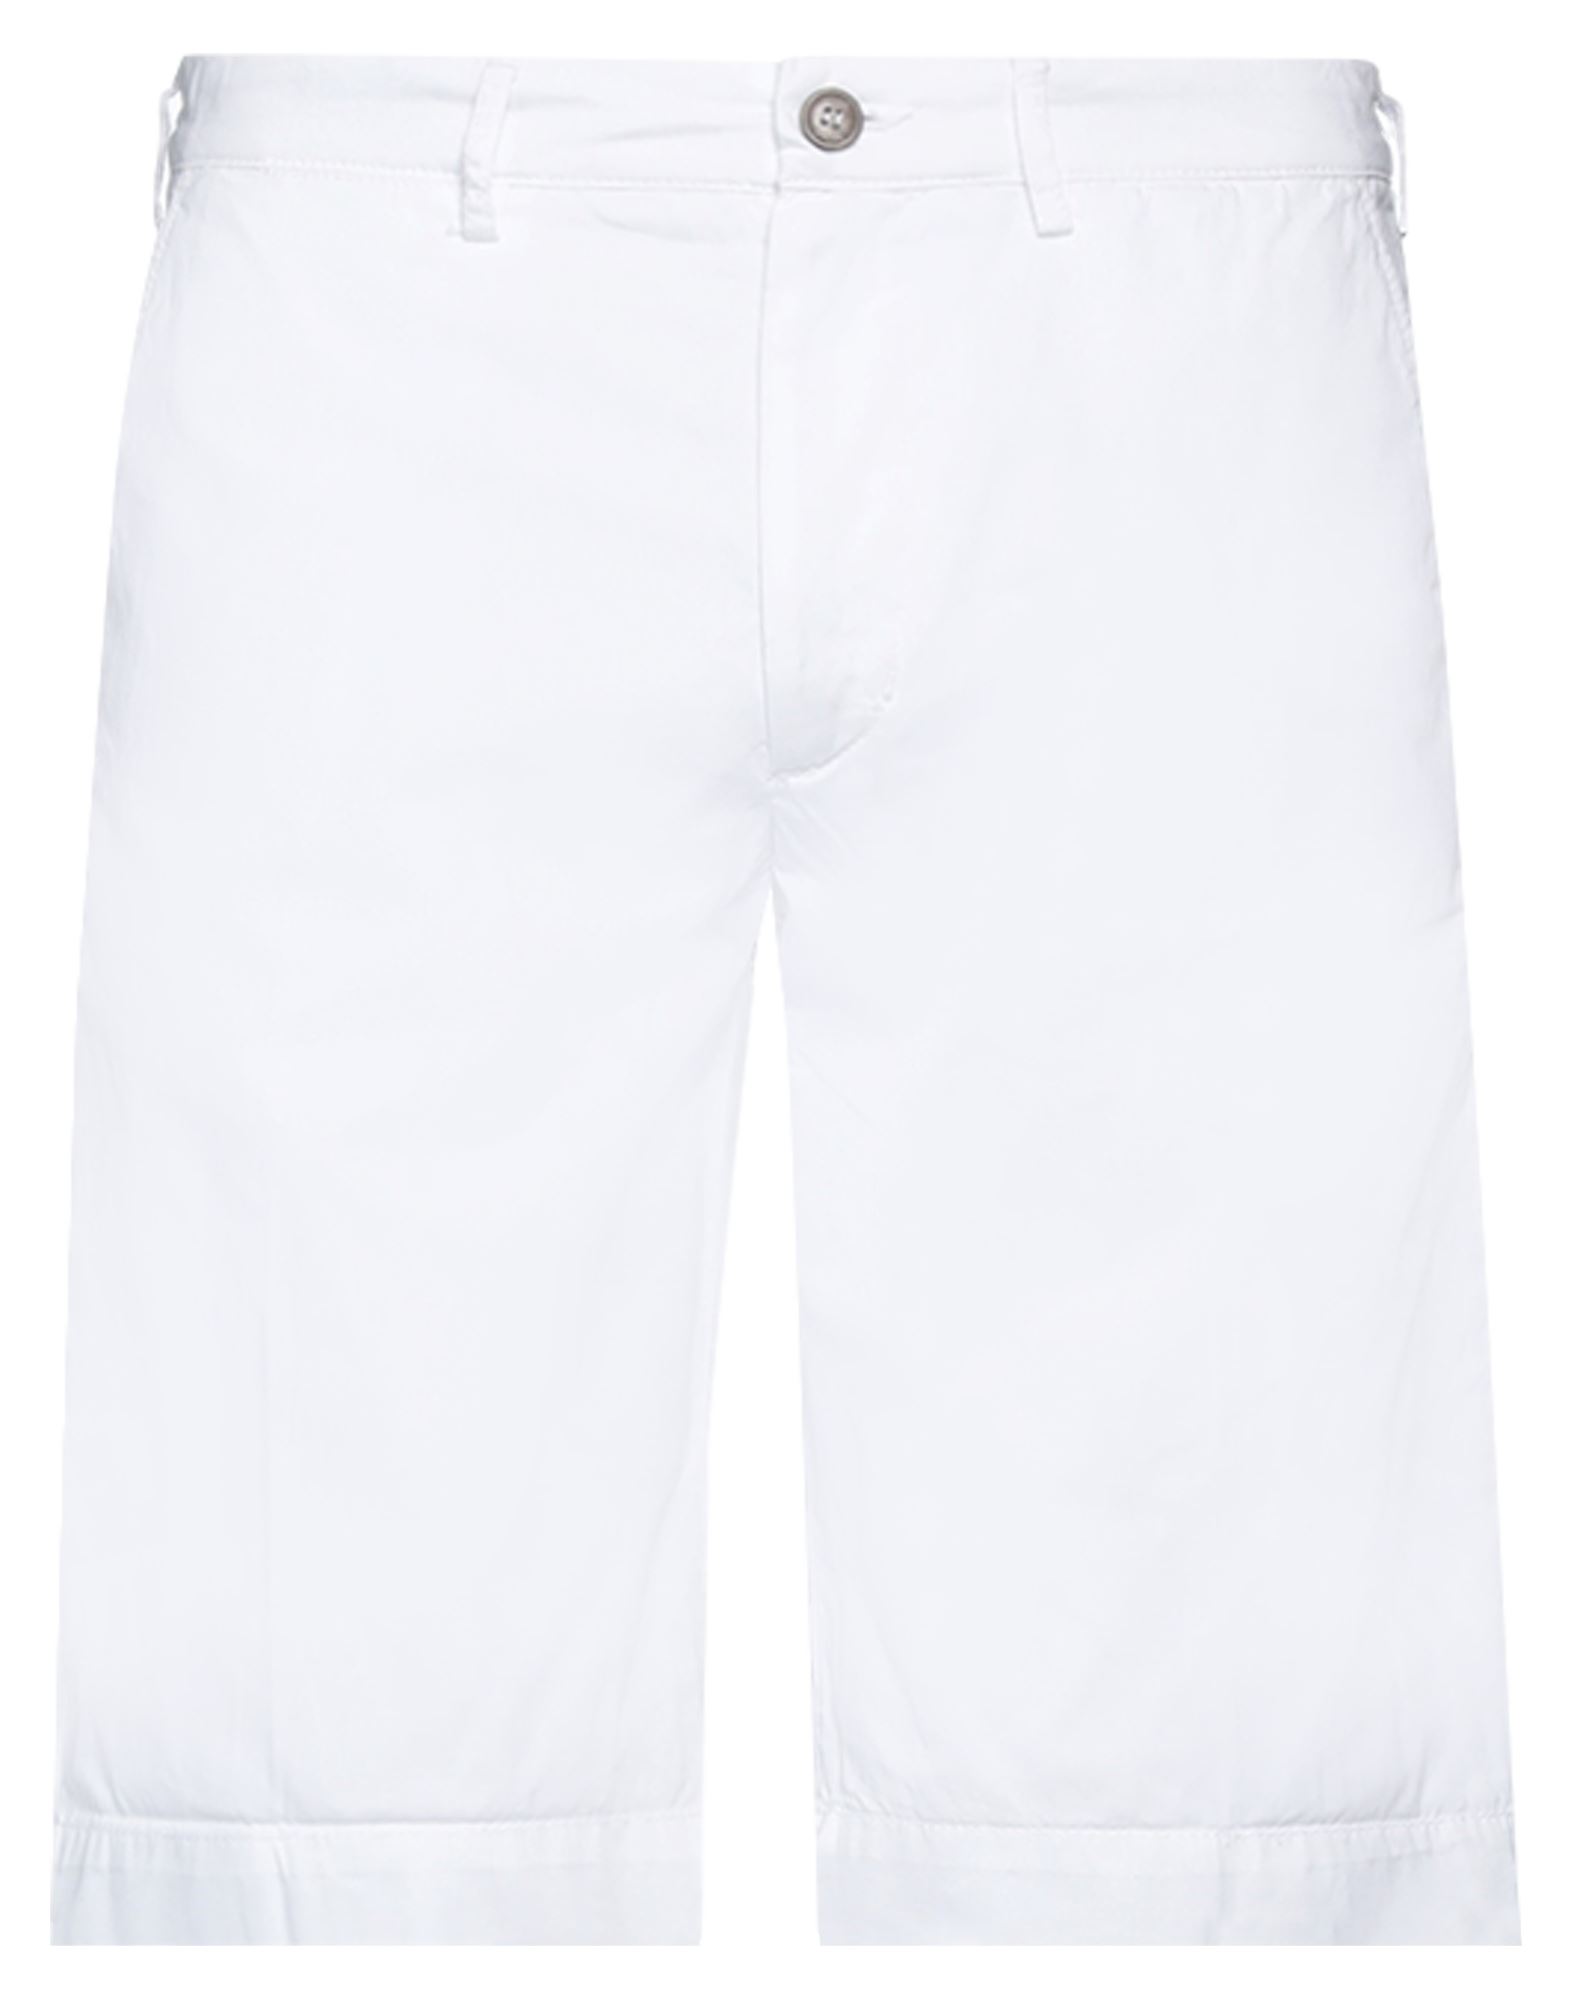 40weft Man Shorts & Bermuda Shorts White Size 34 Cotton